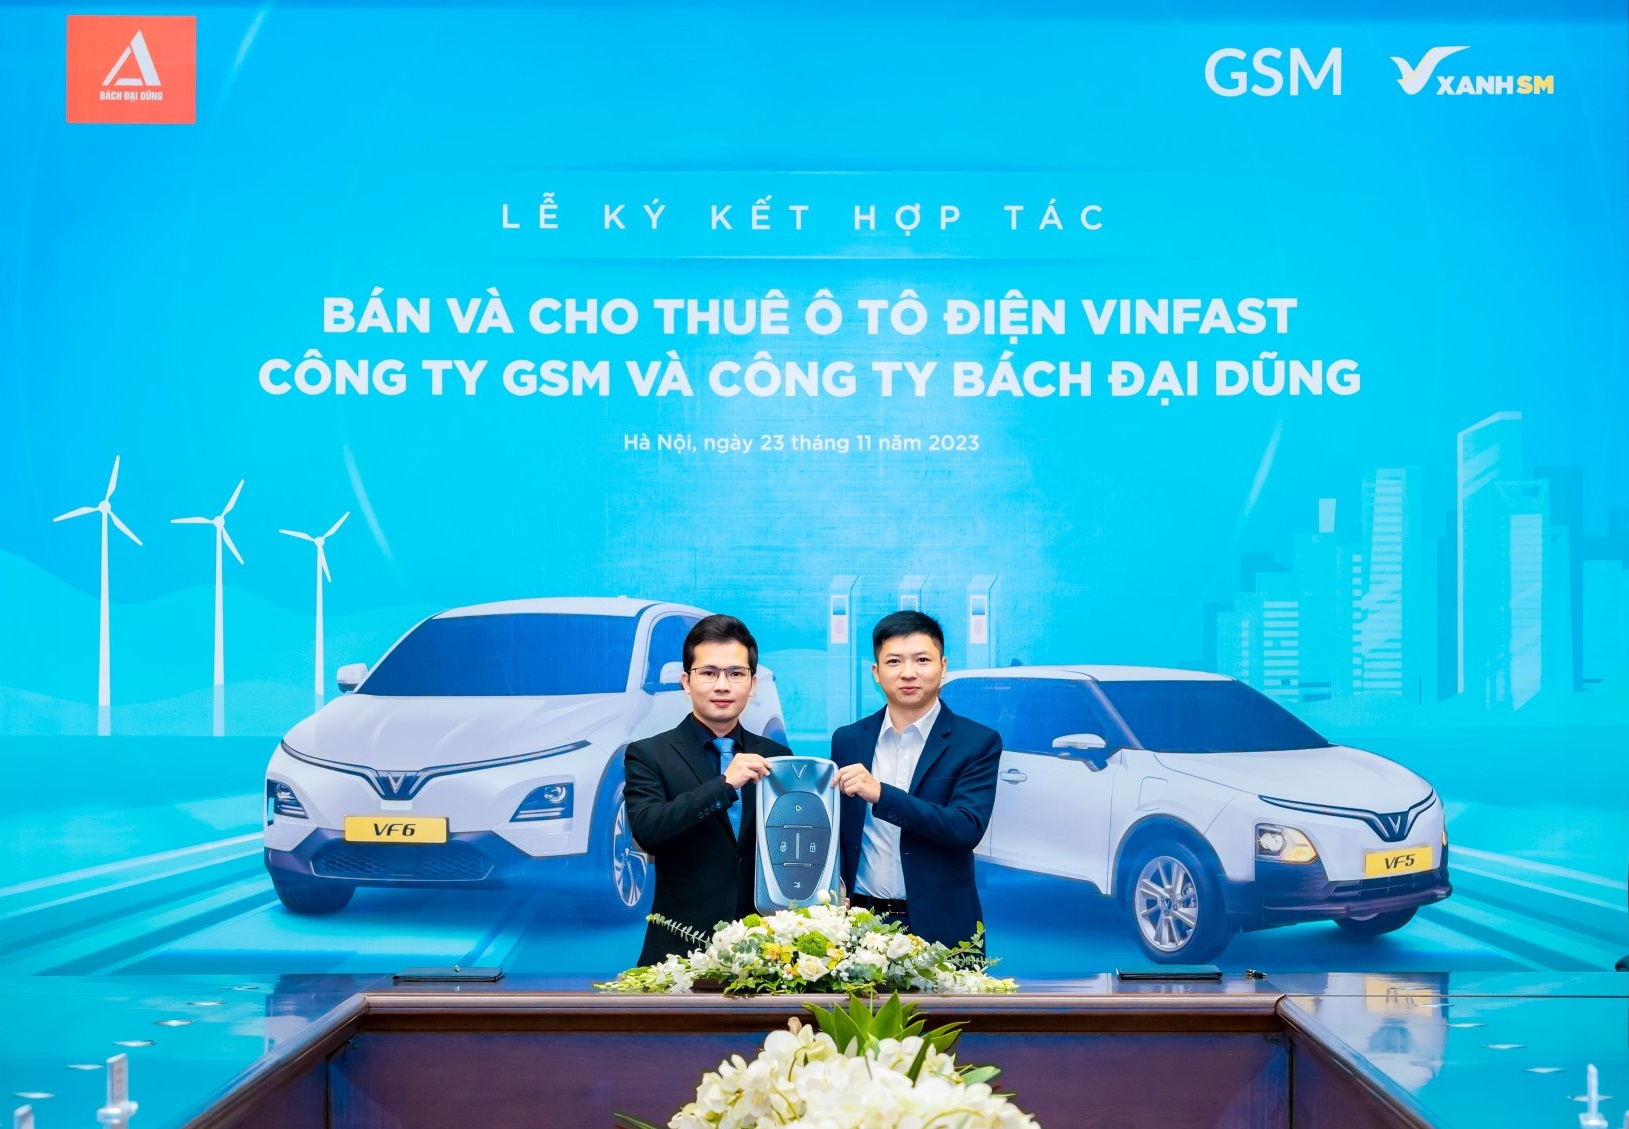 Kinh tế - Hãng taxi thuần điện đầu tiên tại Hà Tĩnh mua và thuê 300 ô tô điện VinFast từ GSM